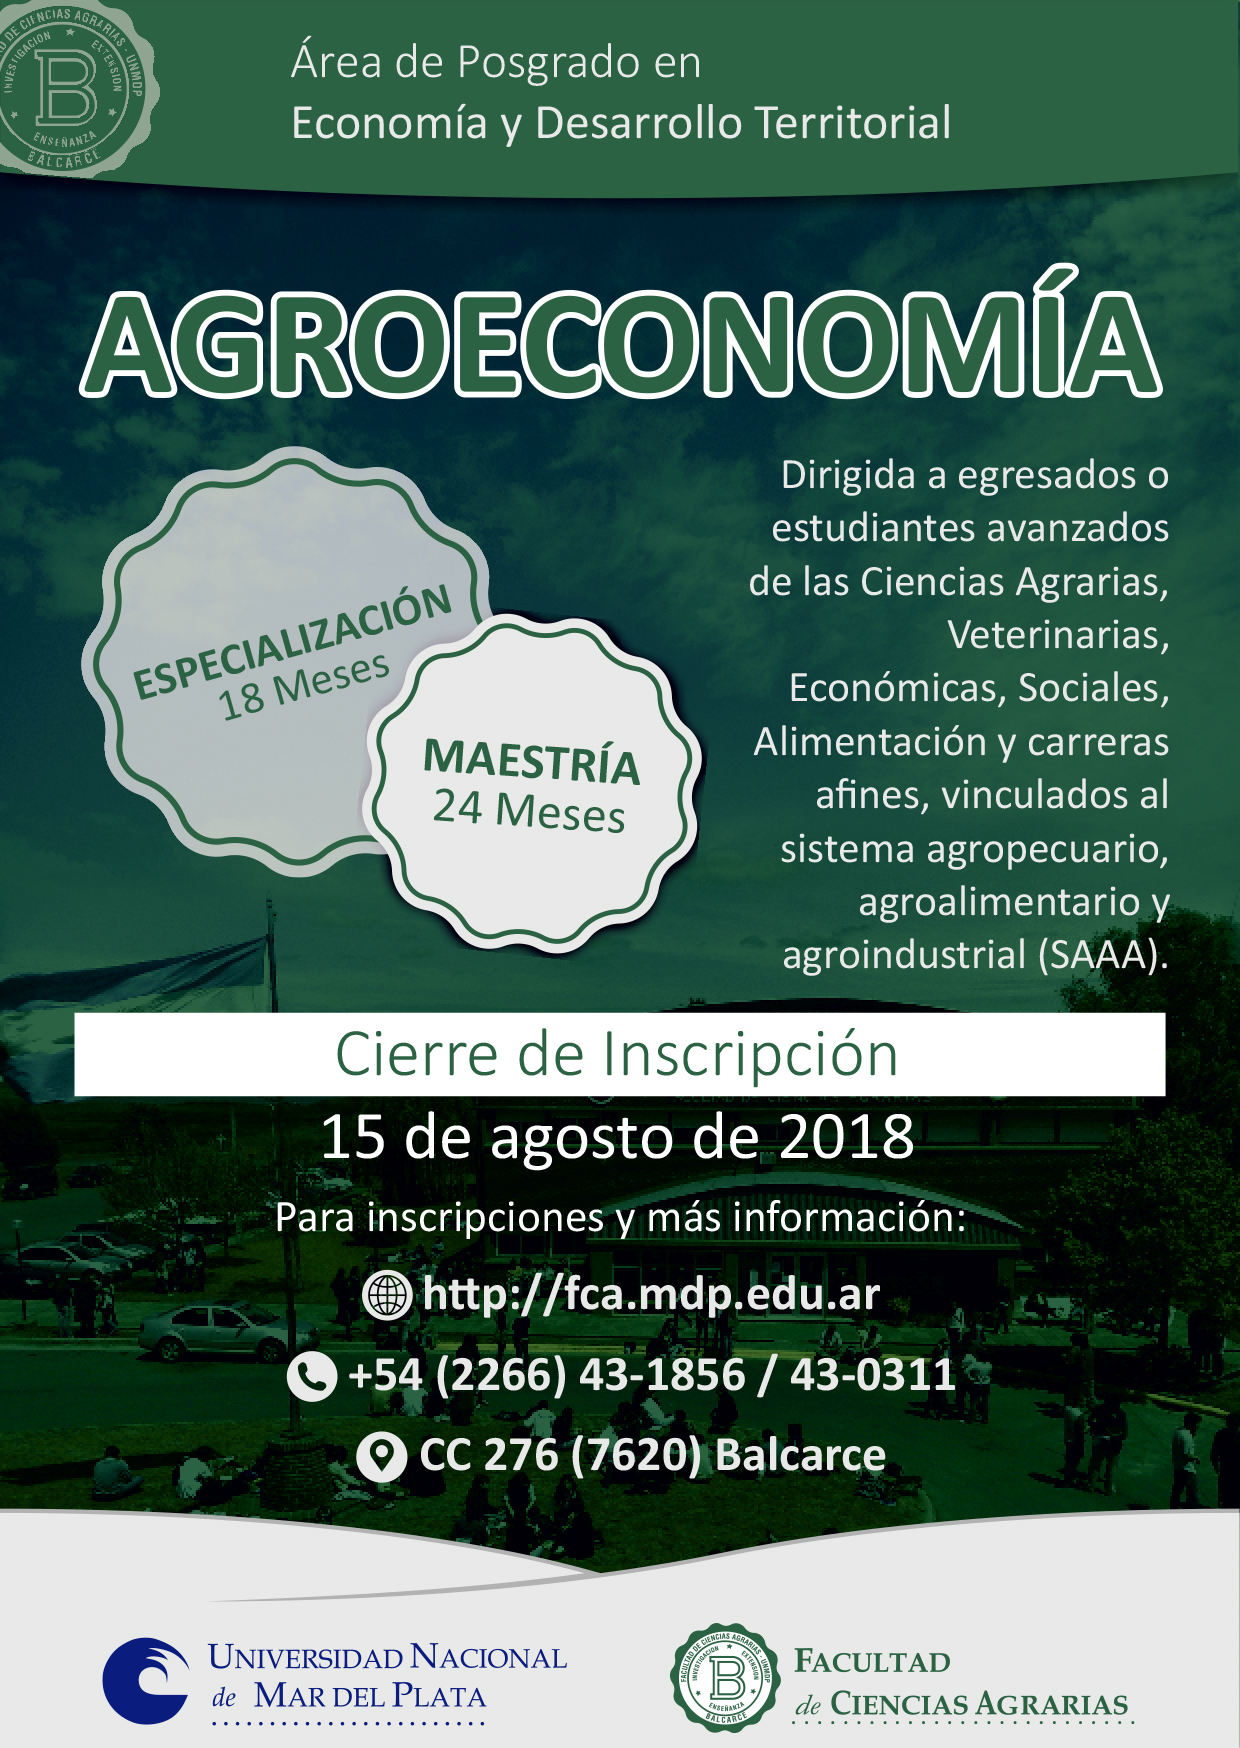 Agroeconomia slide